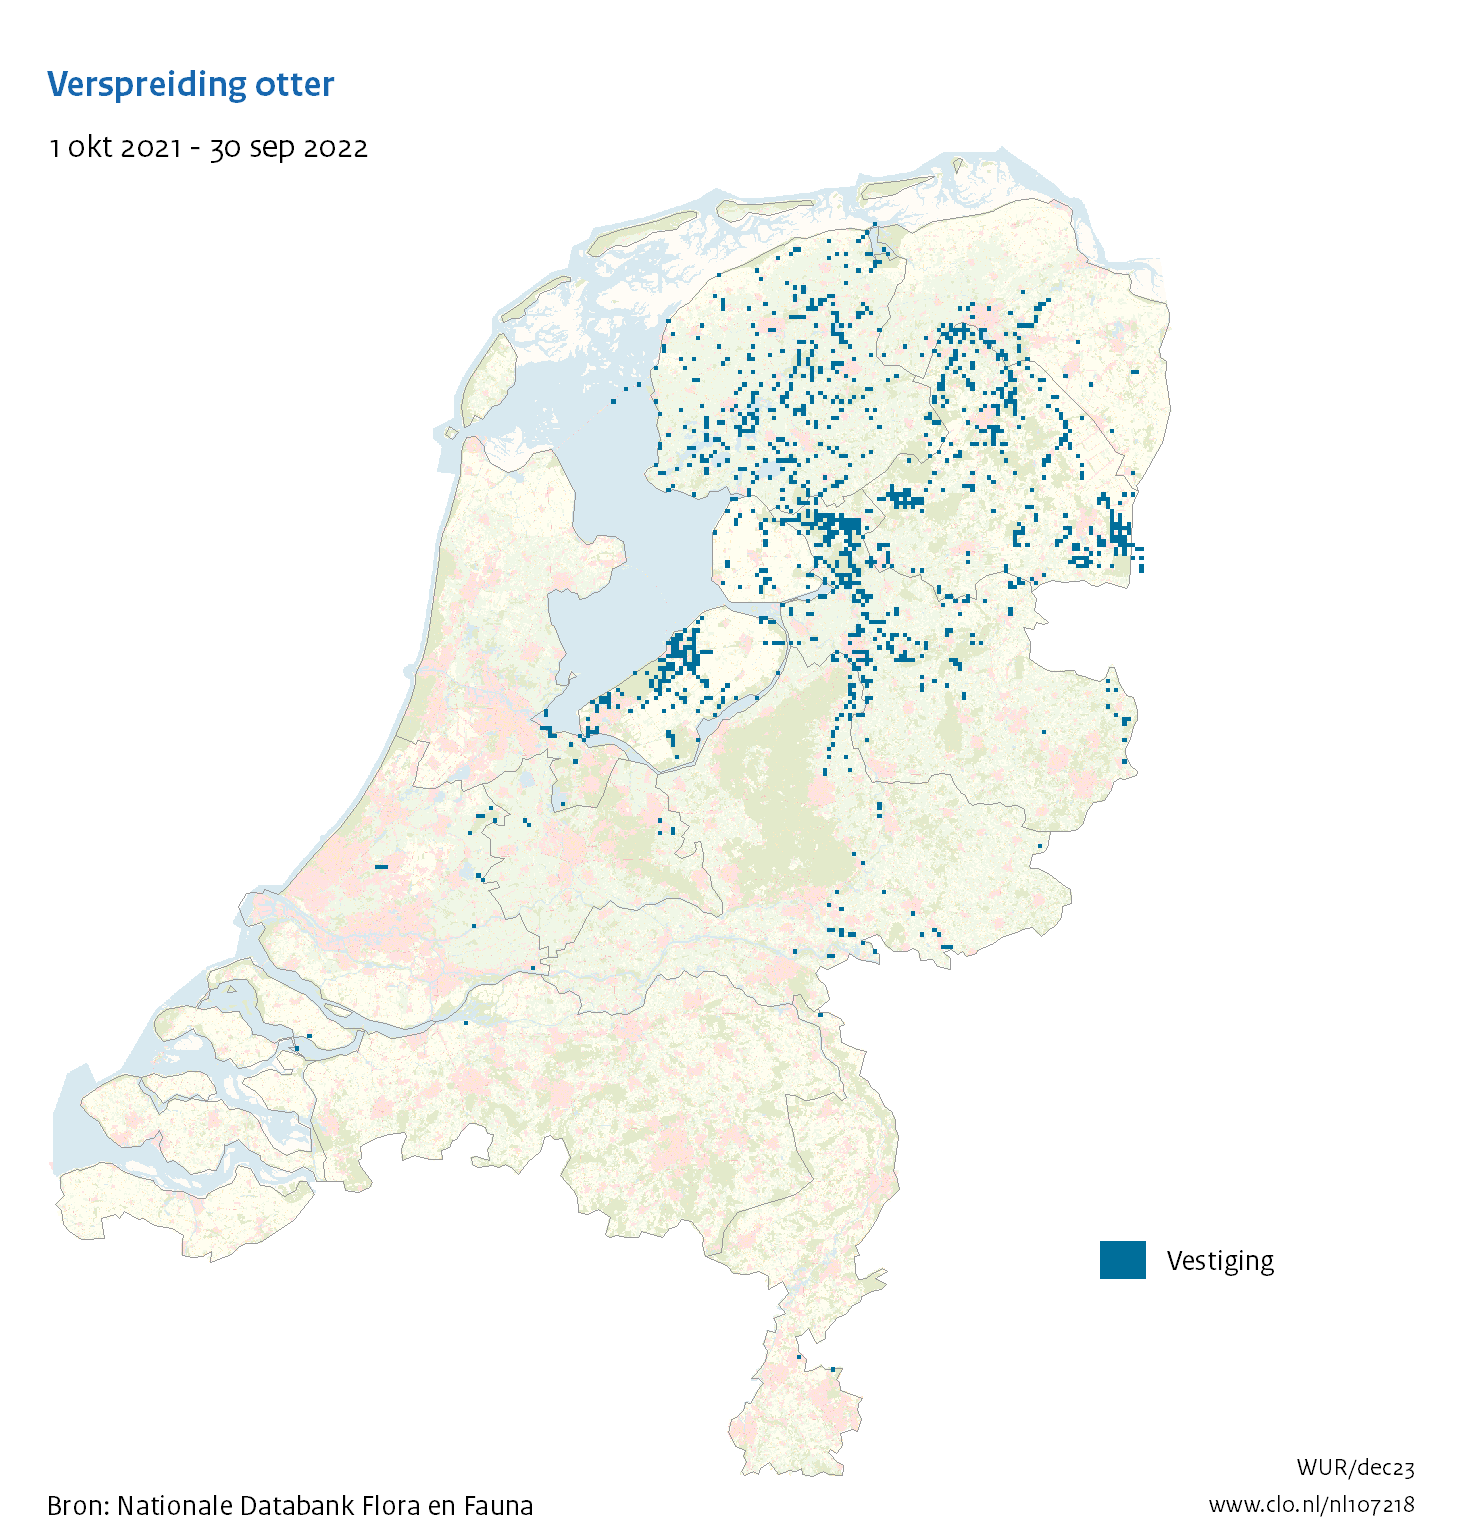 Herintroductie otter: op de kaart van Nederland is aangegeven dat de otter nu vooral in Friesland, Overijssel, Drenthe en Flevoland voorkomt en in mindere mate in Groningen, Gelderland, Utrecht en Zuid-Holland.